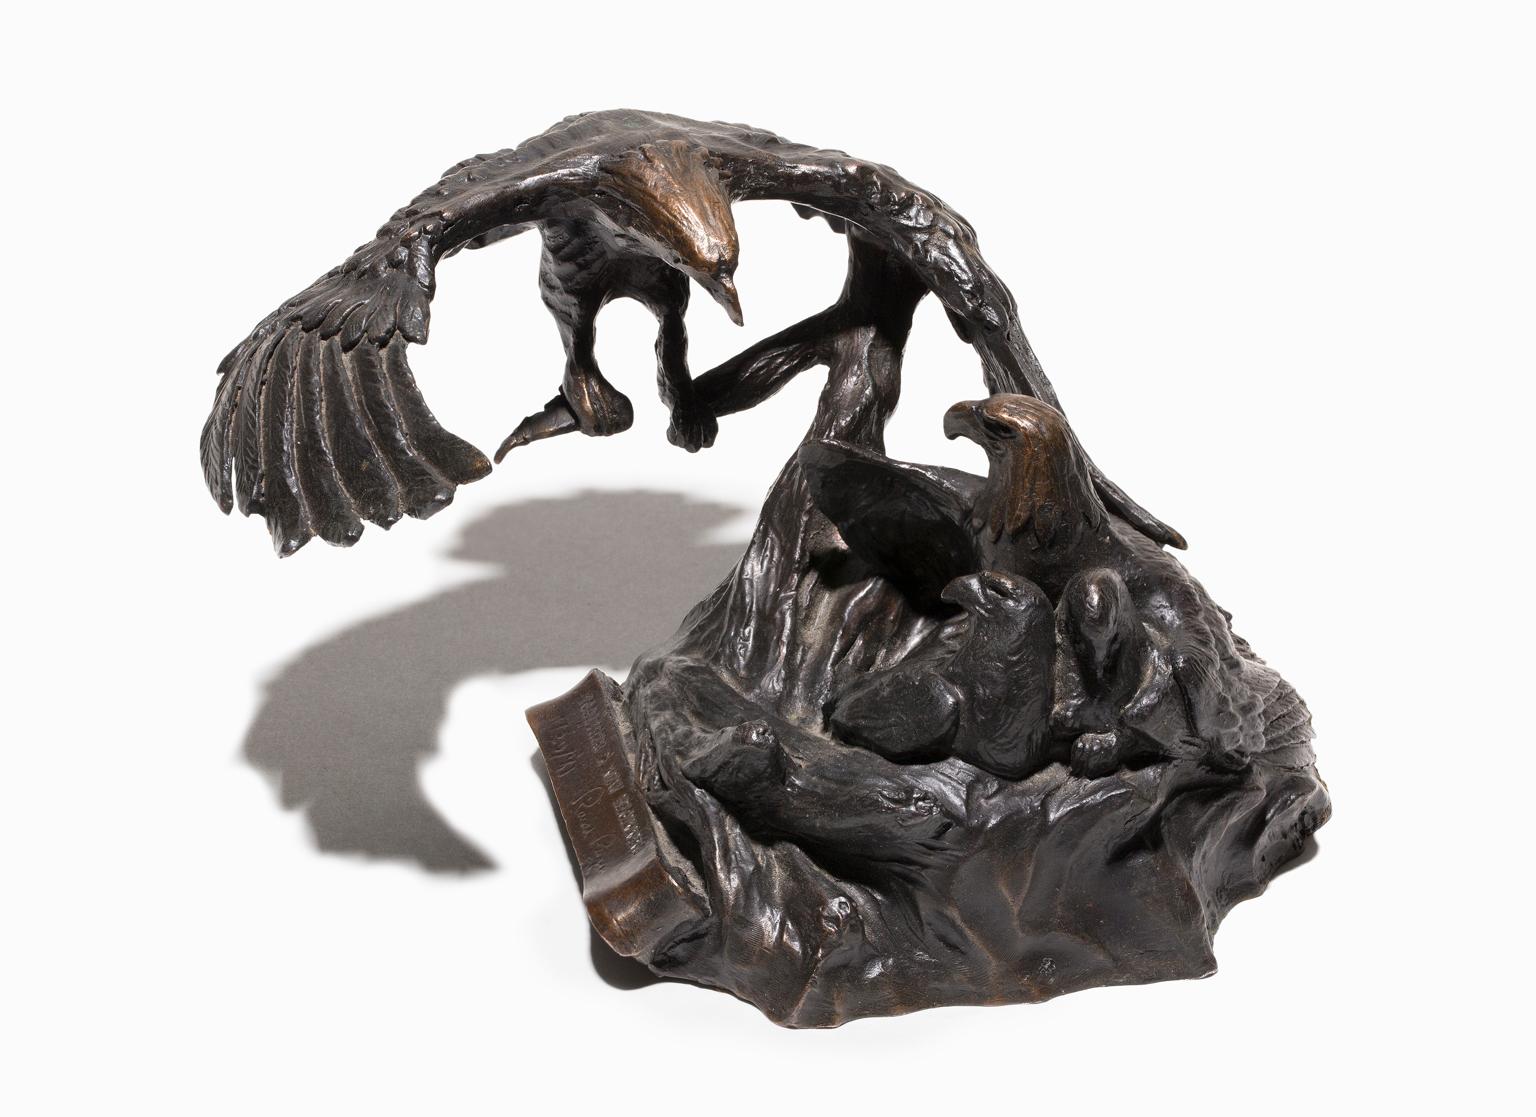 „Together A New Beginning“, Bronzestatue eines Adlers aus der Zeit von Ronald Reagan – Sculpture von Miley Busiek Frost